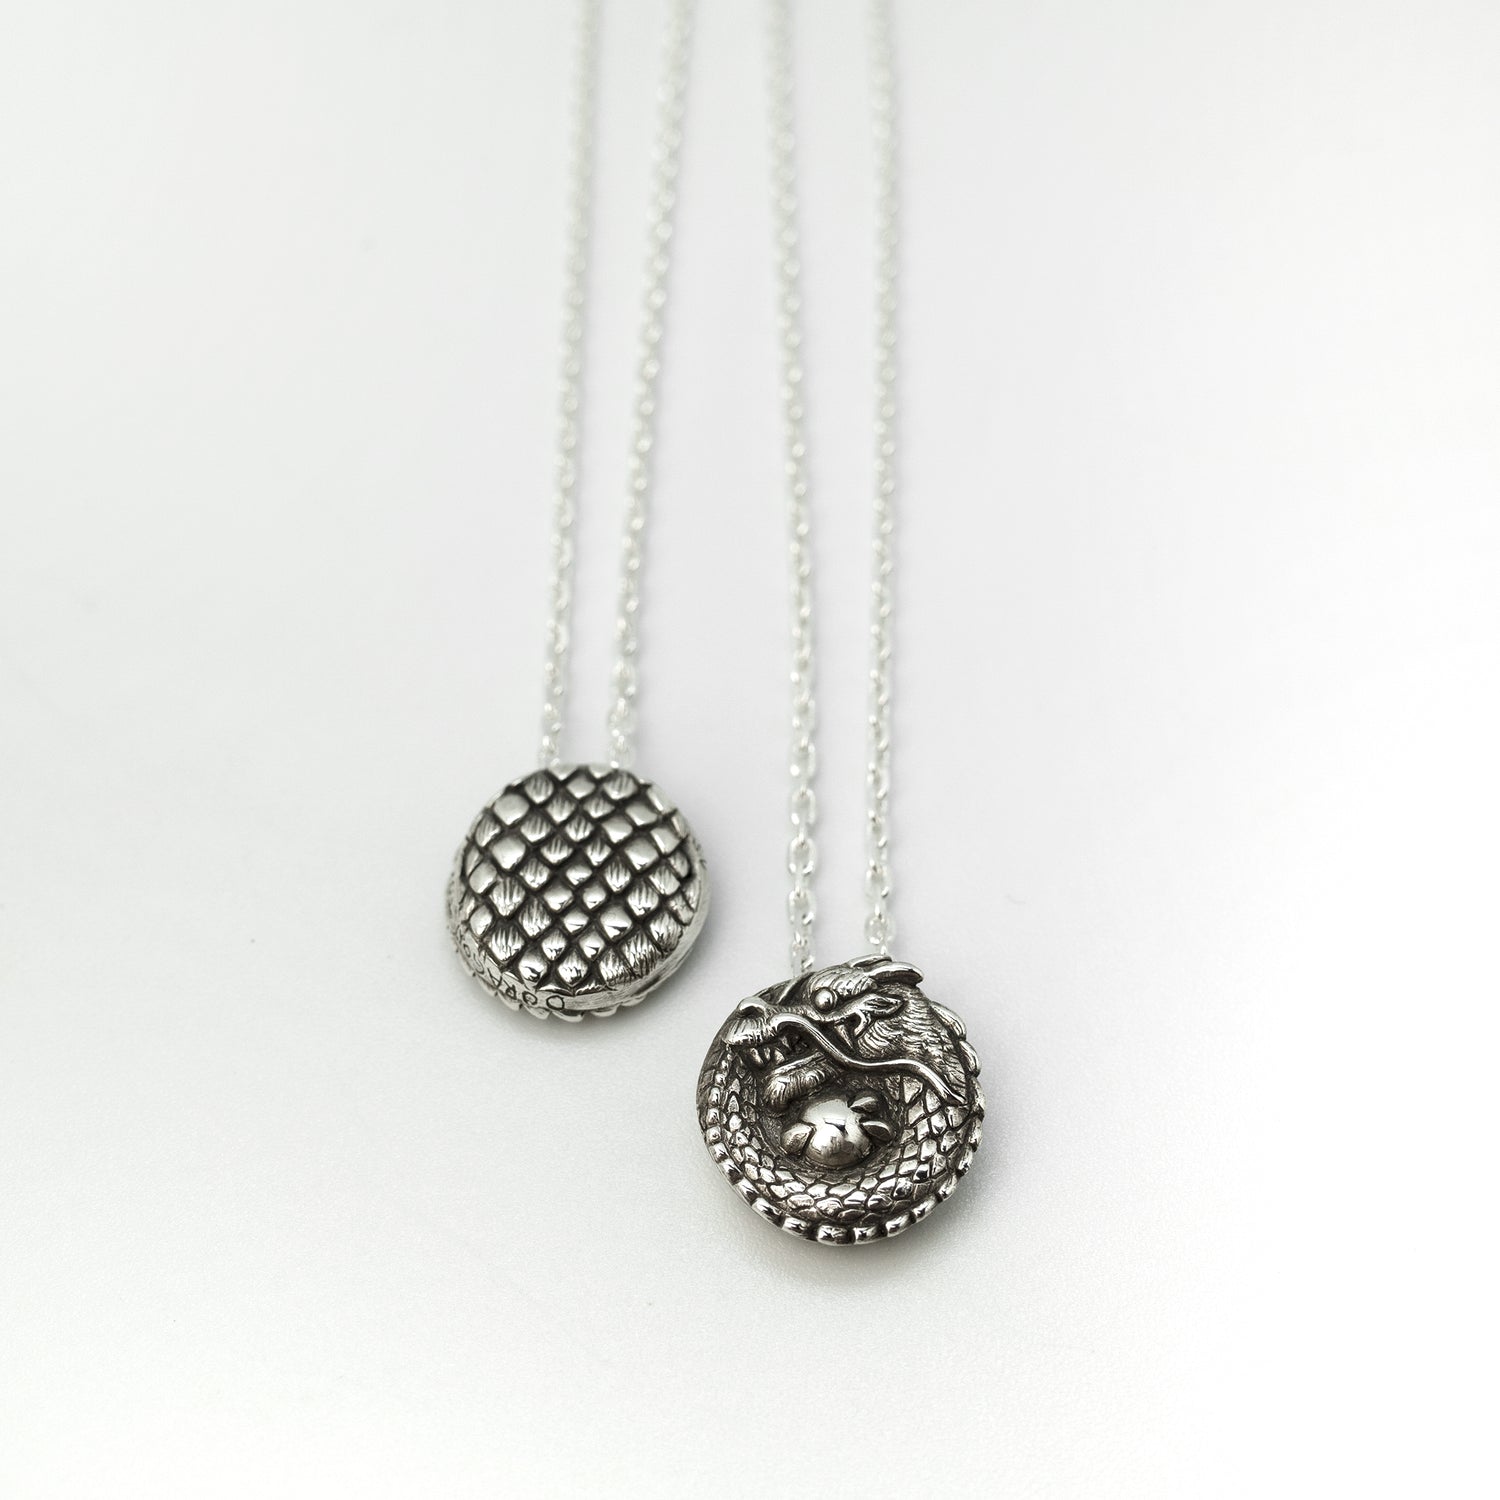 Necklaces & pendants